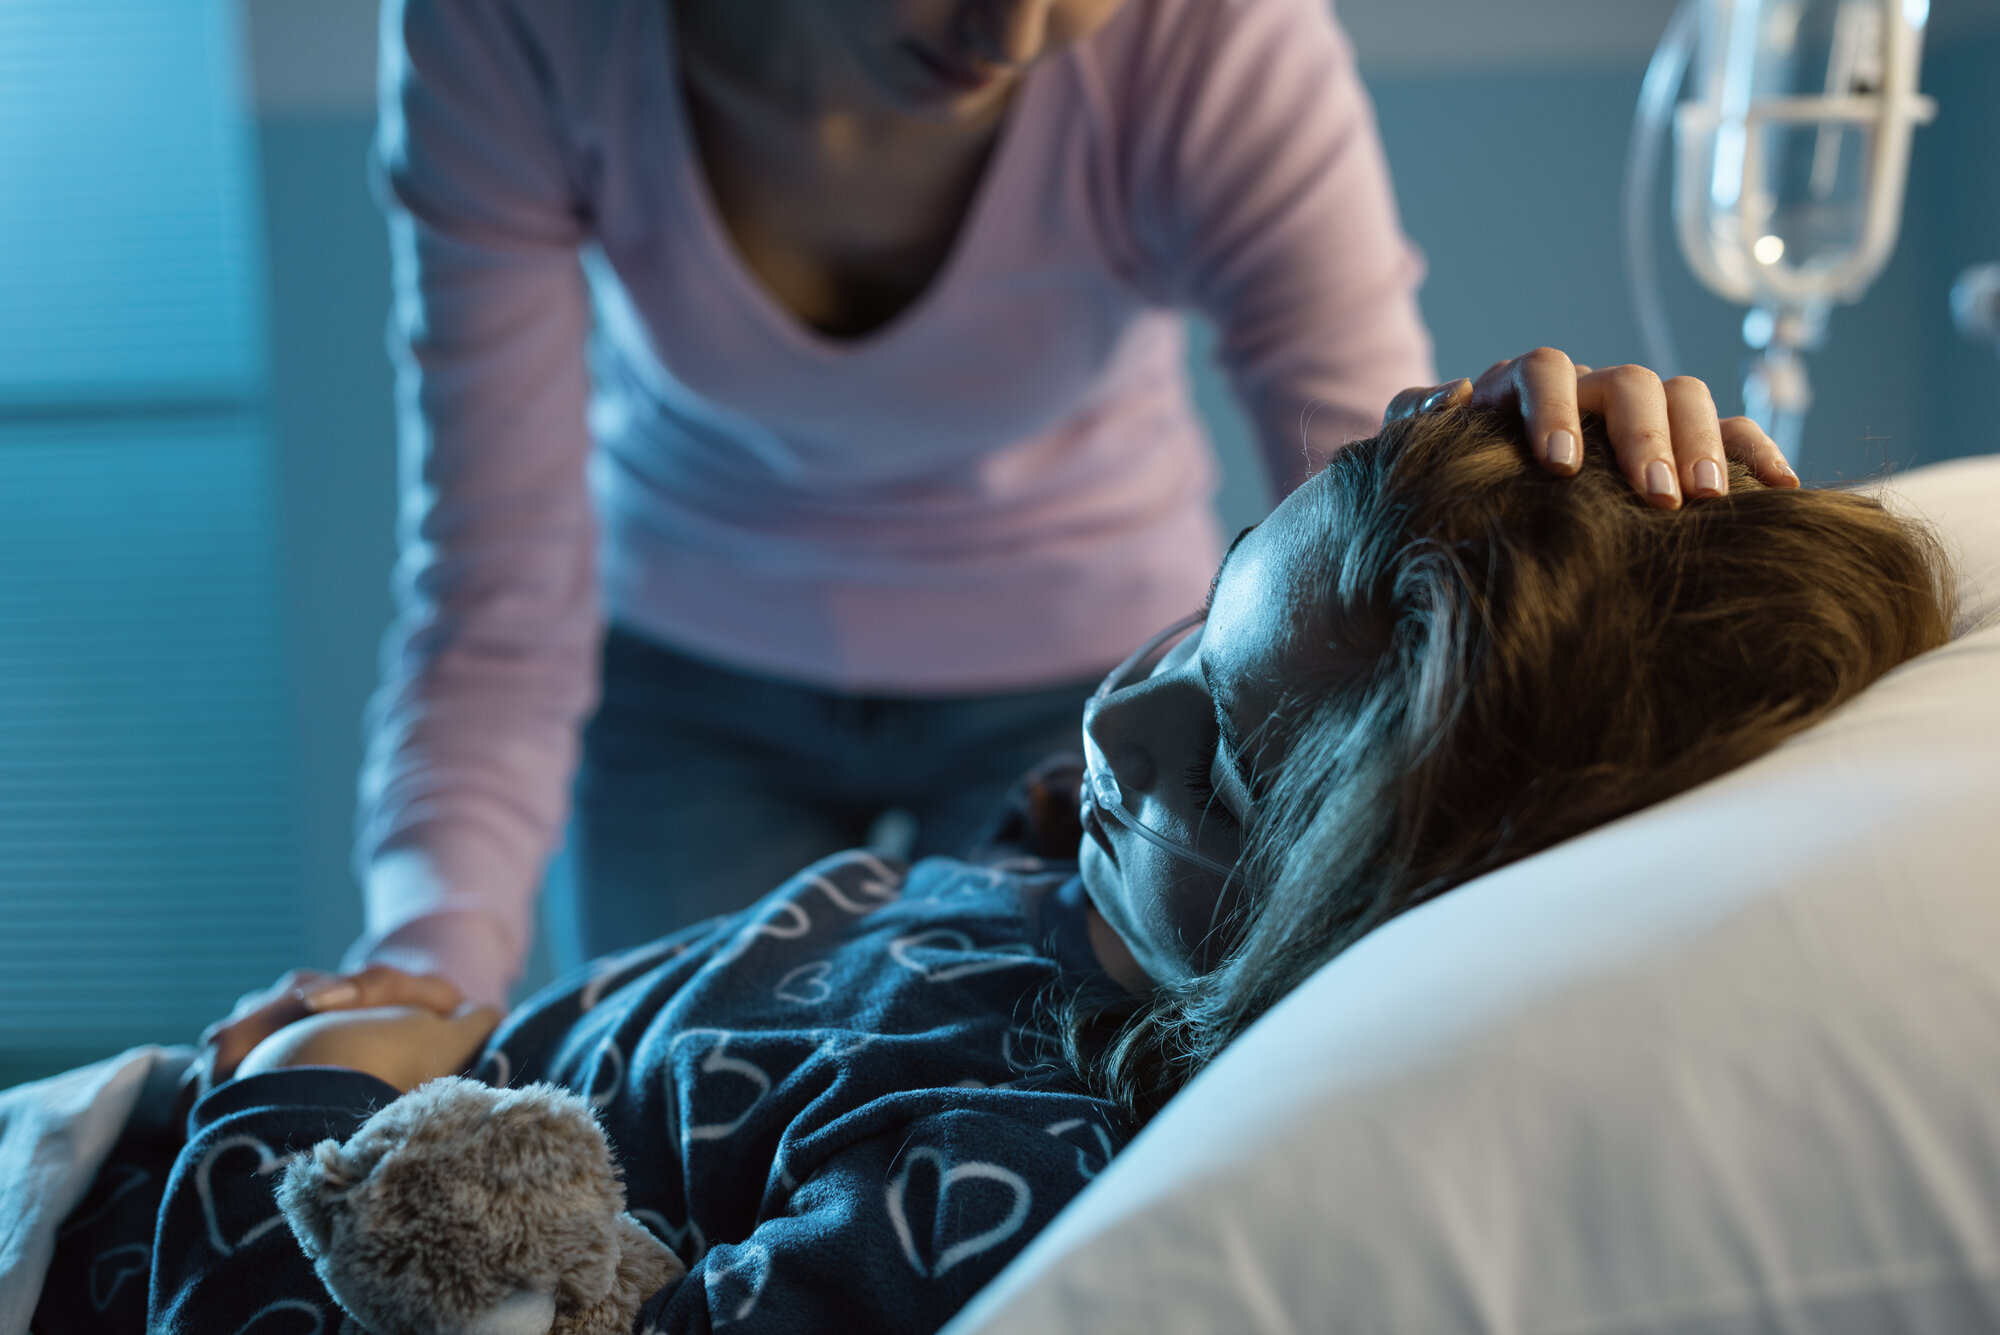 Bildet viser ei syk jente i senga på sykehuset. Moren står over og holder henne på pannen.